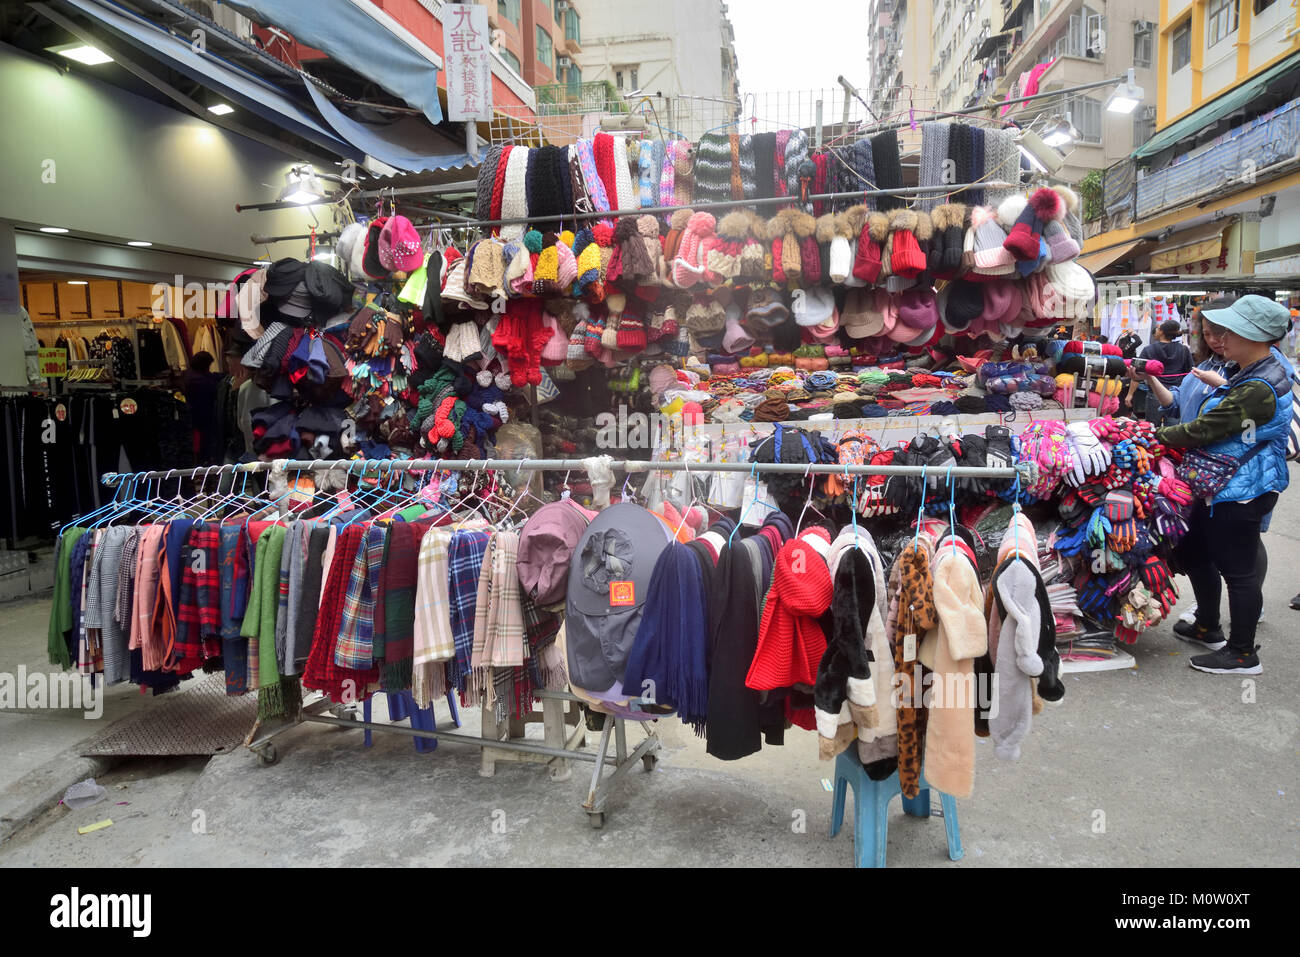 Stallo stradale la vendita di articoli di abbigliamento in un mercato a Kowloon, Hong Kong Foto Stock